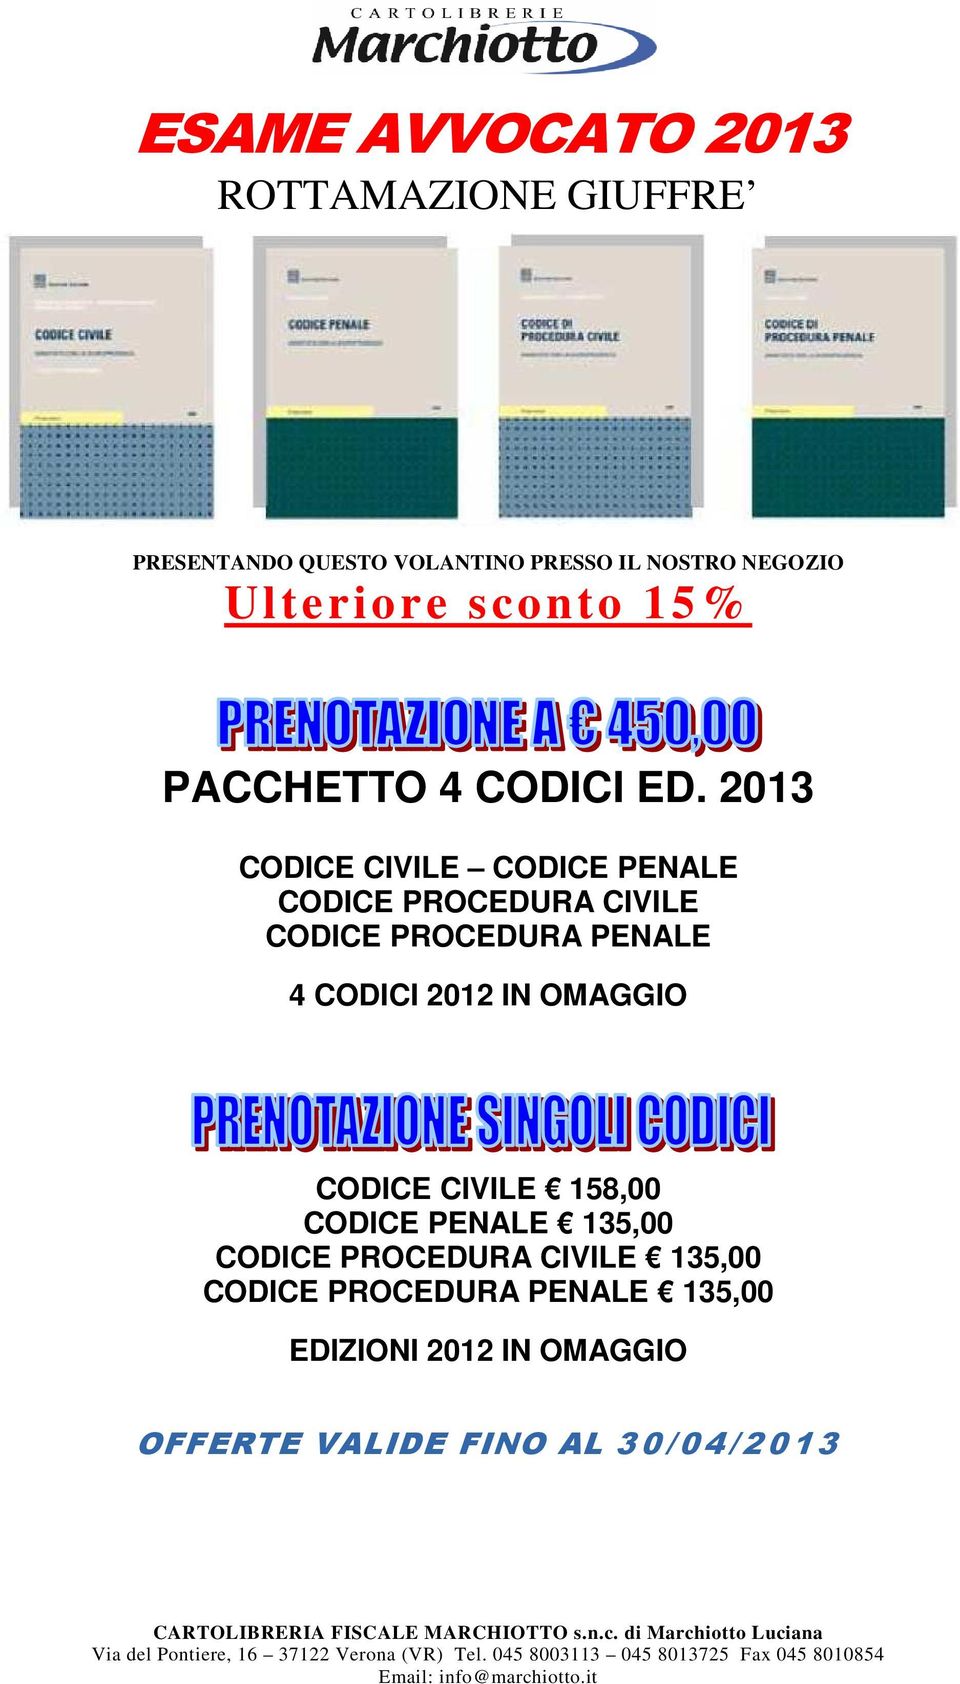 PENALE 135,00 CODICE PROCEDURA CIVILE 135,00 CODICE PROCEDURA PENALE 135,00 EDIZIONI 2012 IN OMAGGIO OFFERTE VALIDE FINO AL 30/04/2013